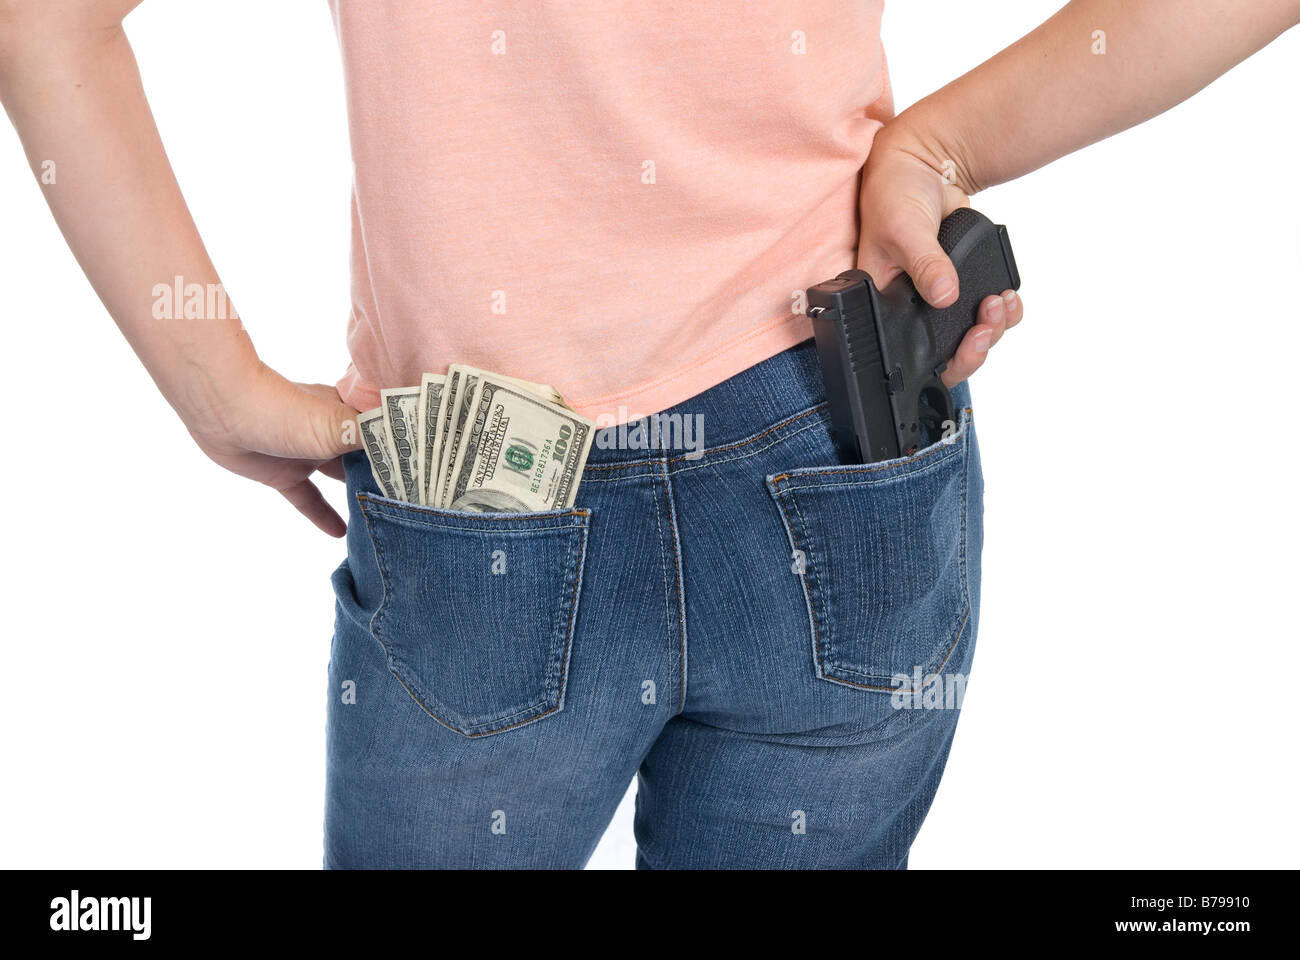 Eine Frau ist bereit, ihr Geld mit einer Semi-automatische Pistole zu verteidigen Stockfoto